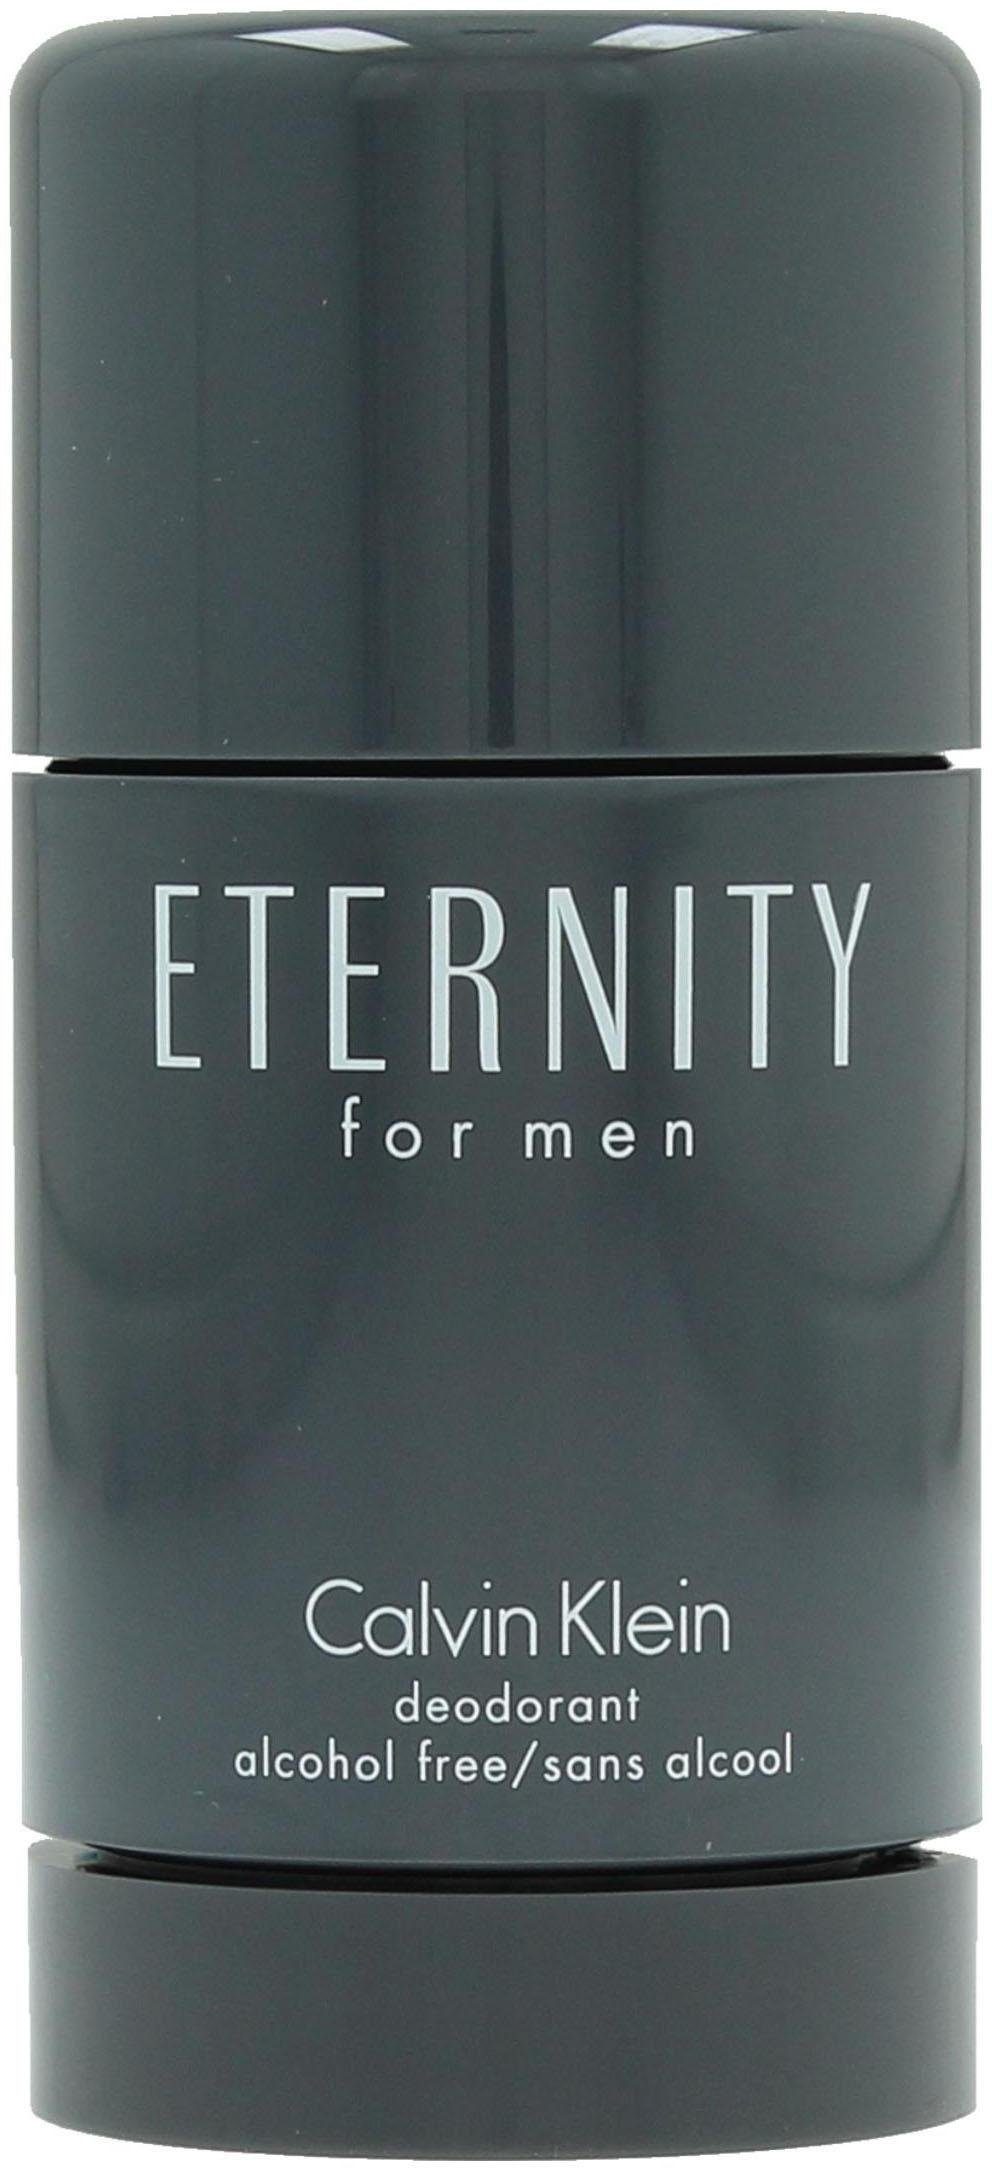 Calvin Klein Deo-Stift Eternity for Men online kaufen | OTTO